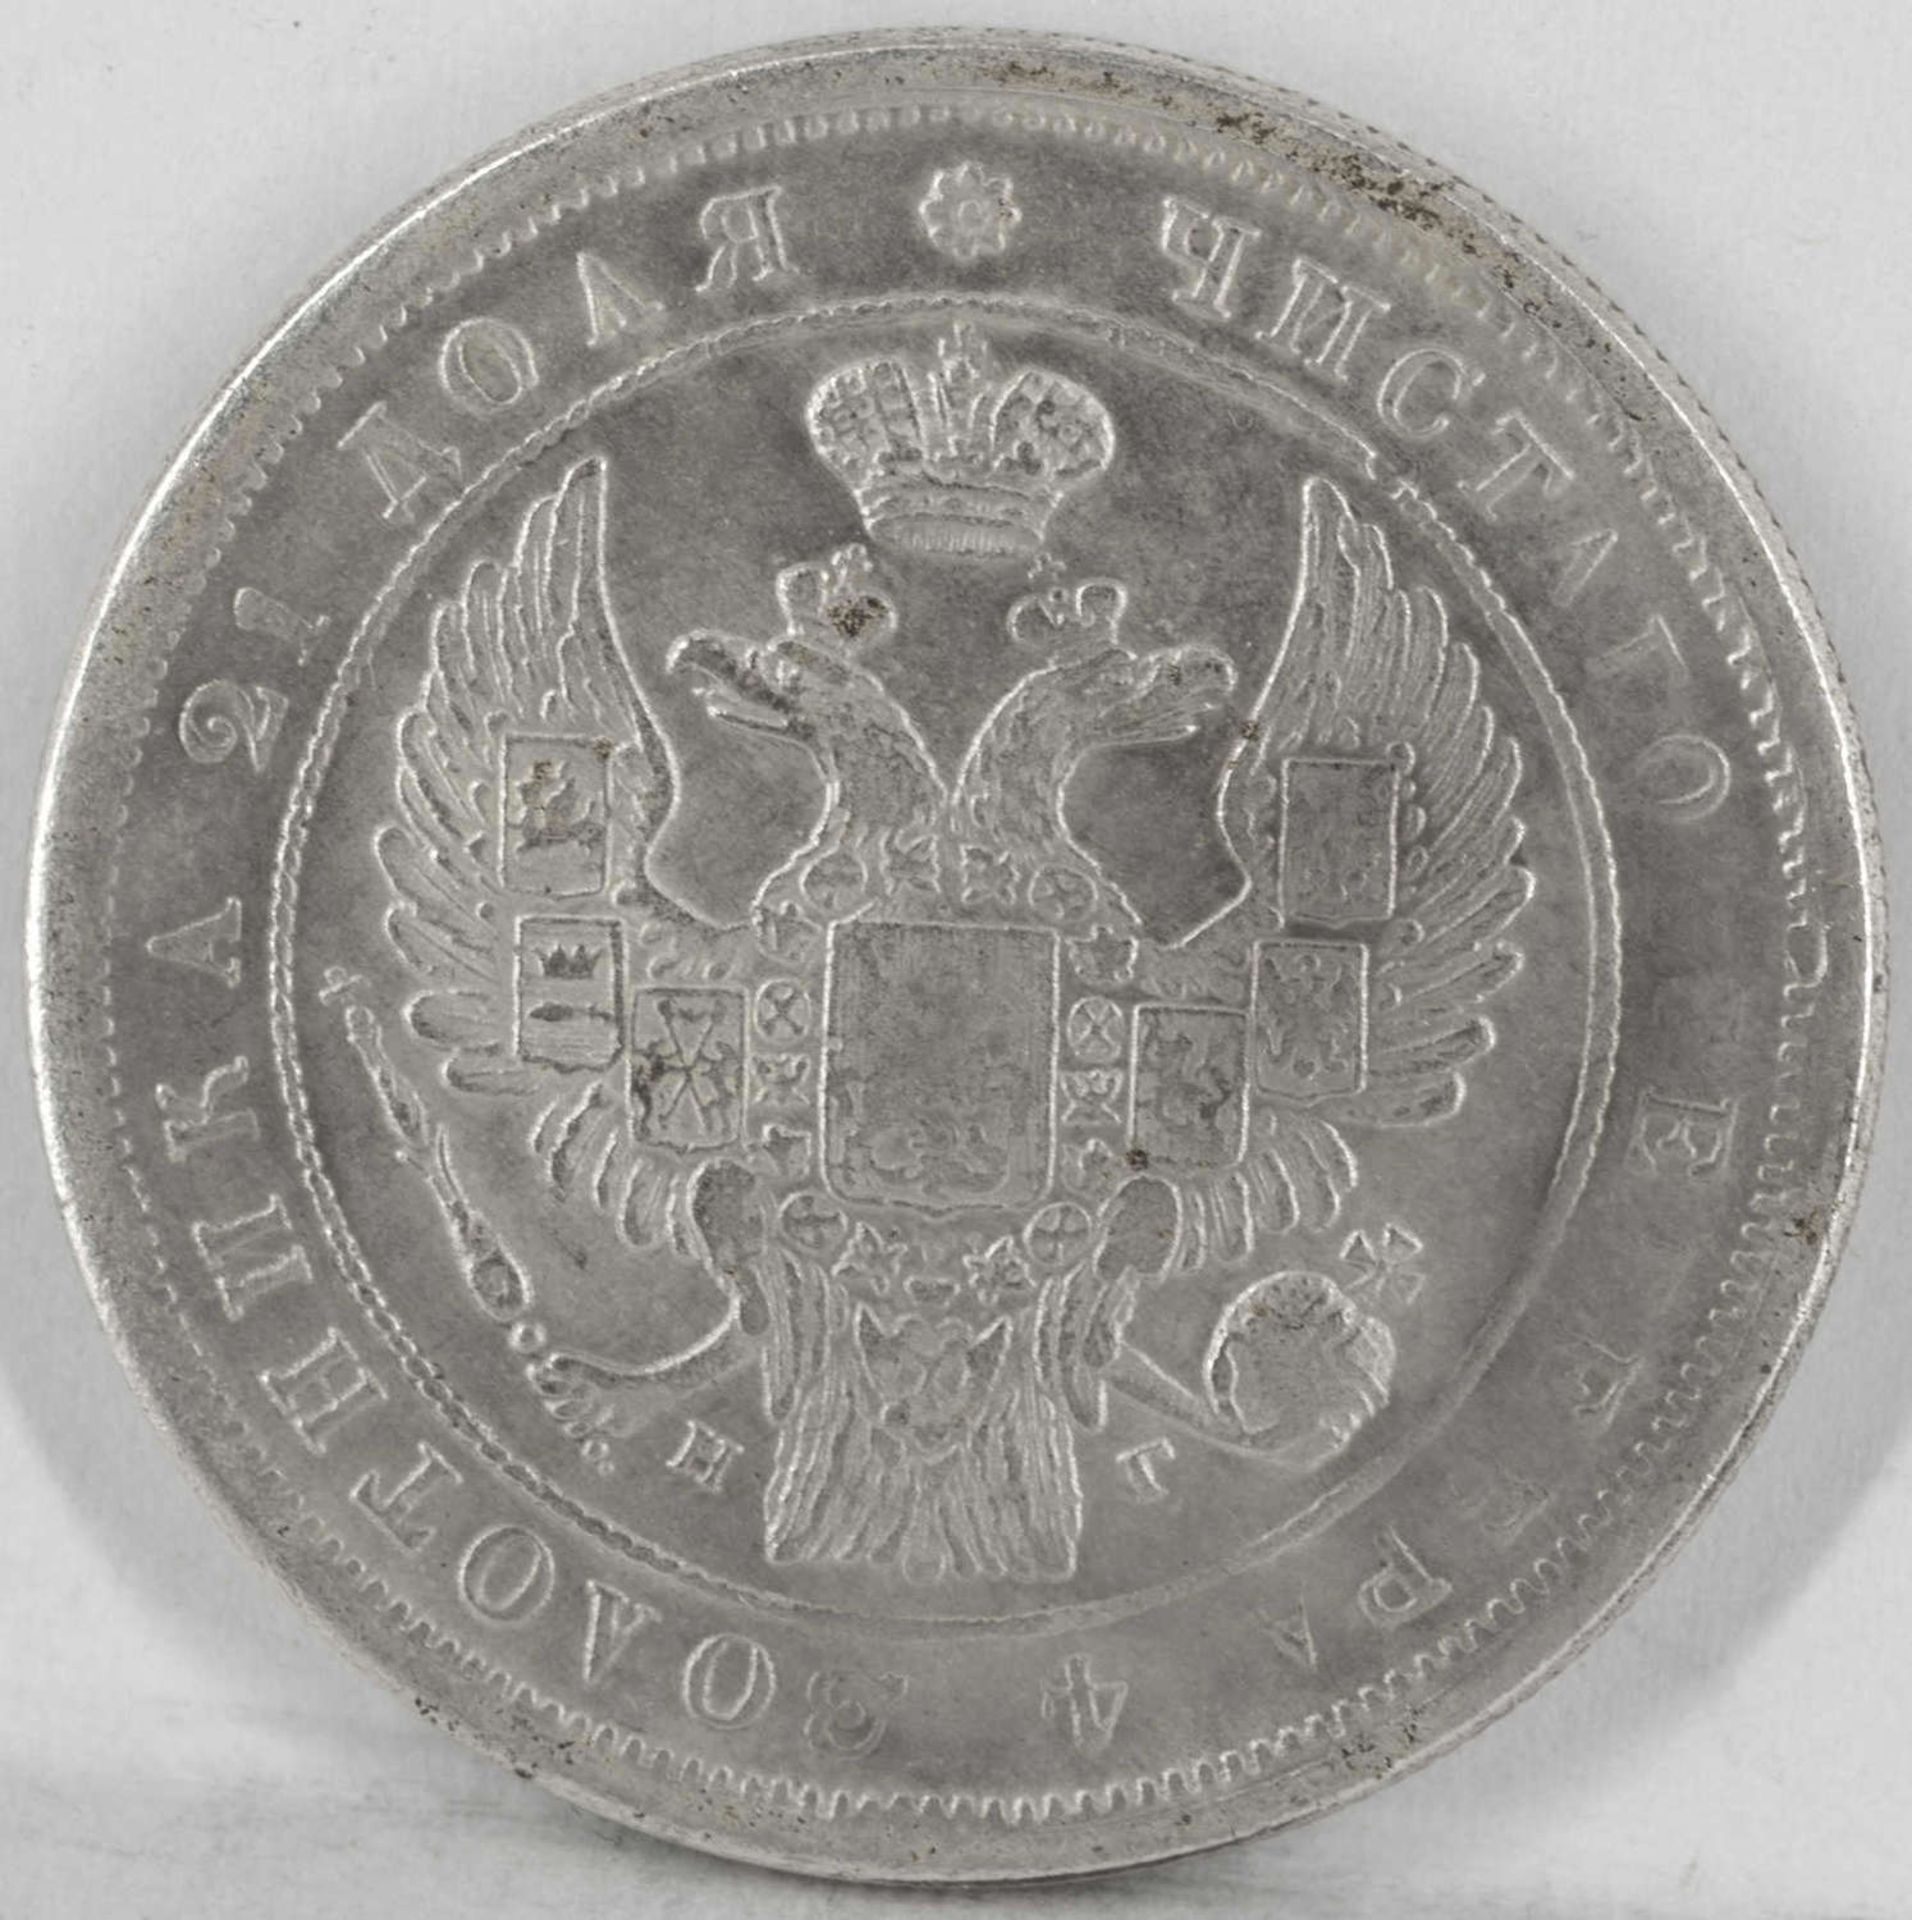 Russland 1833, 1 Rubel "Zar Nikolaus I.". Gewicht: ca. 17,7 g. Durchmesser: ca. 38 mm. Ohne Obligo. - Bild 2 aus 2